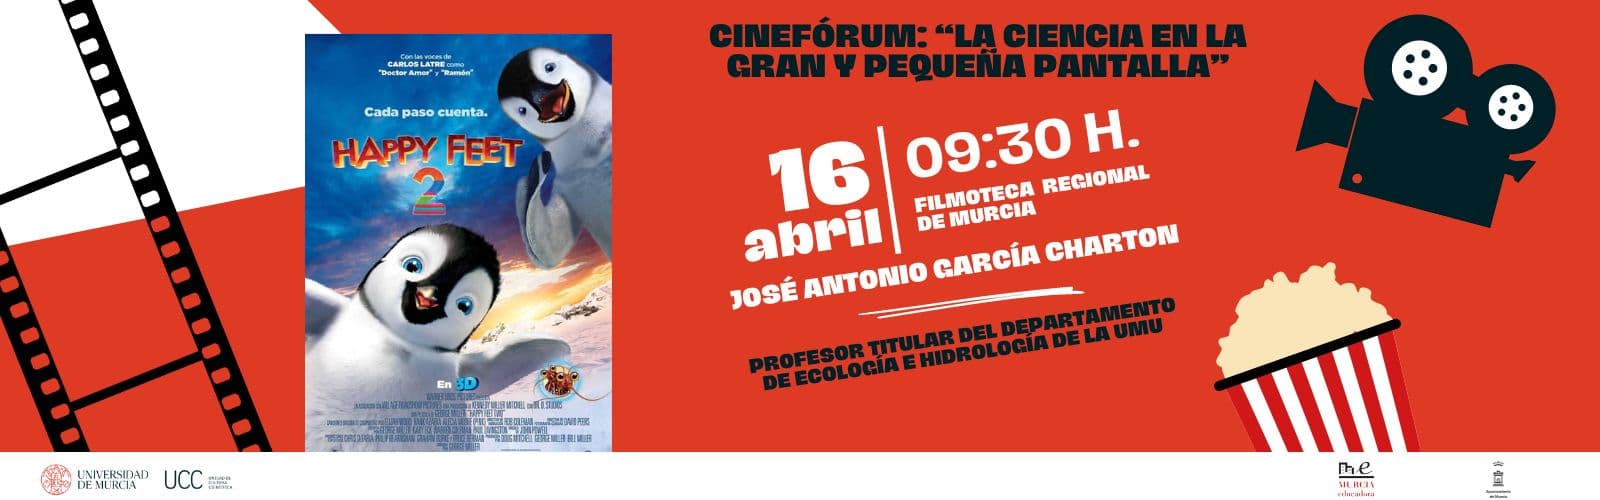 José Antonio García Charton acercará los problemas del cambio climático a 400 estudiantes con el cinefórum 'Happy Feet II' en la Filmoteca Regional